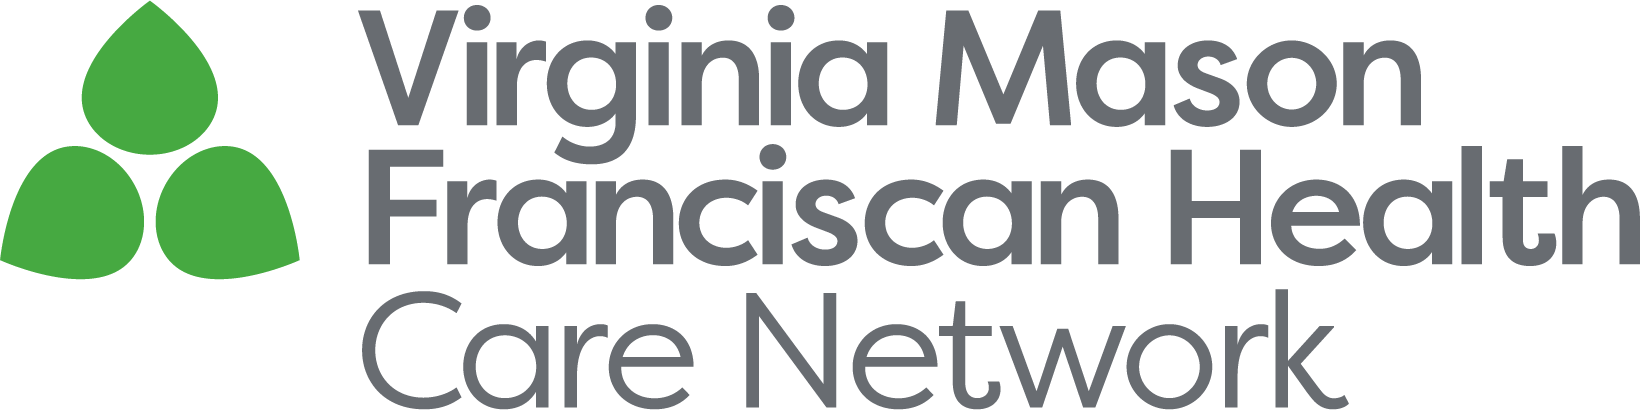 Virginia Mason Franciscan Health Care Network logo